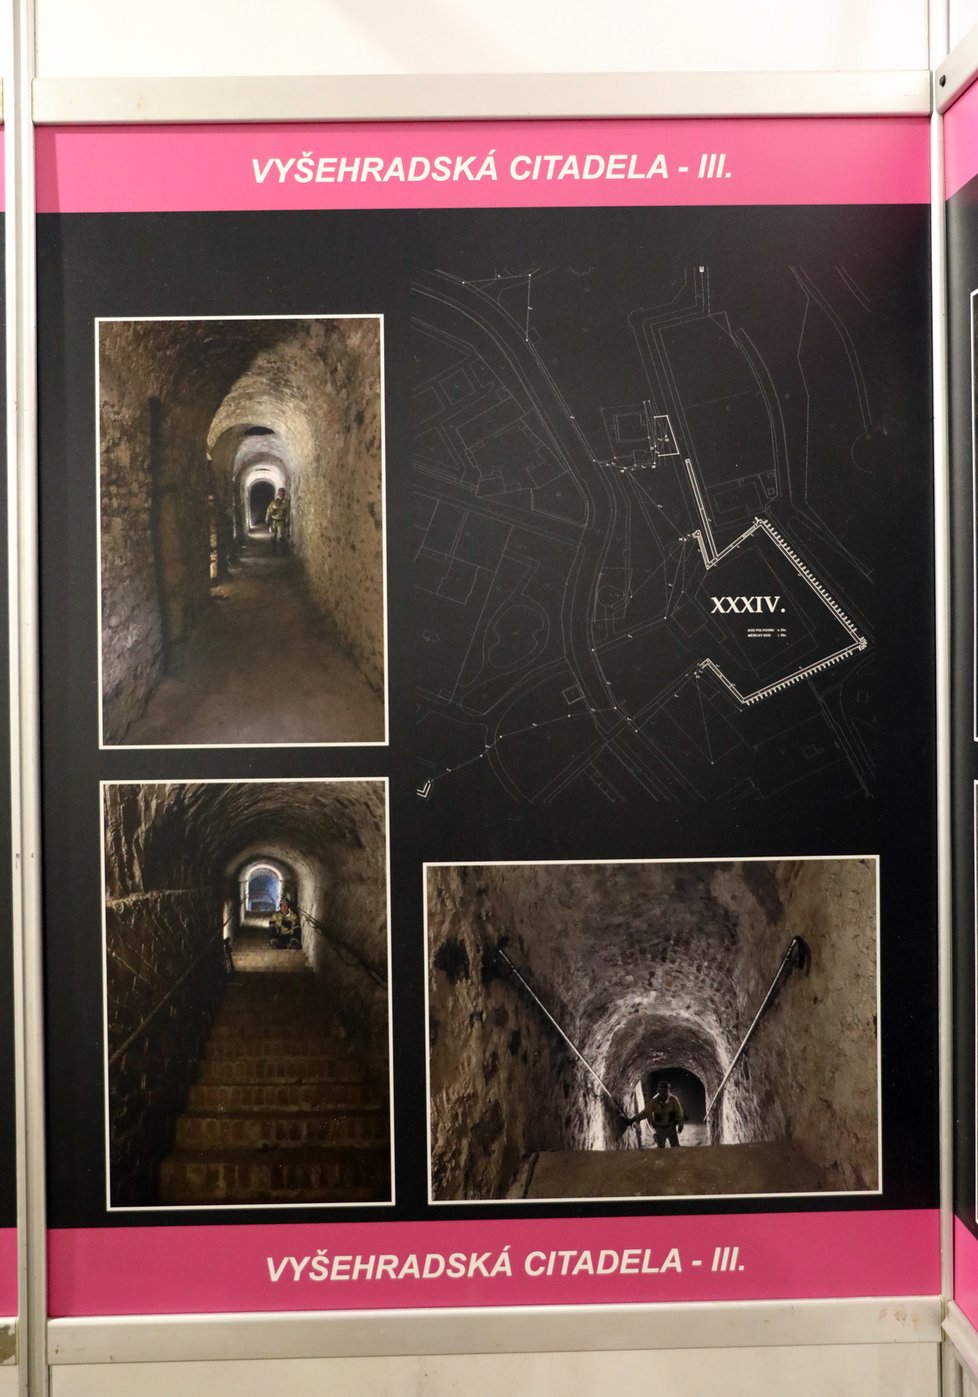 Taje a zákoutí, které se nachází v pražském podzemí, ukazuje výstava Město pod městem, která je k vidění u Vrtbovské zahrady.